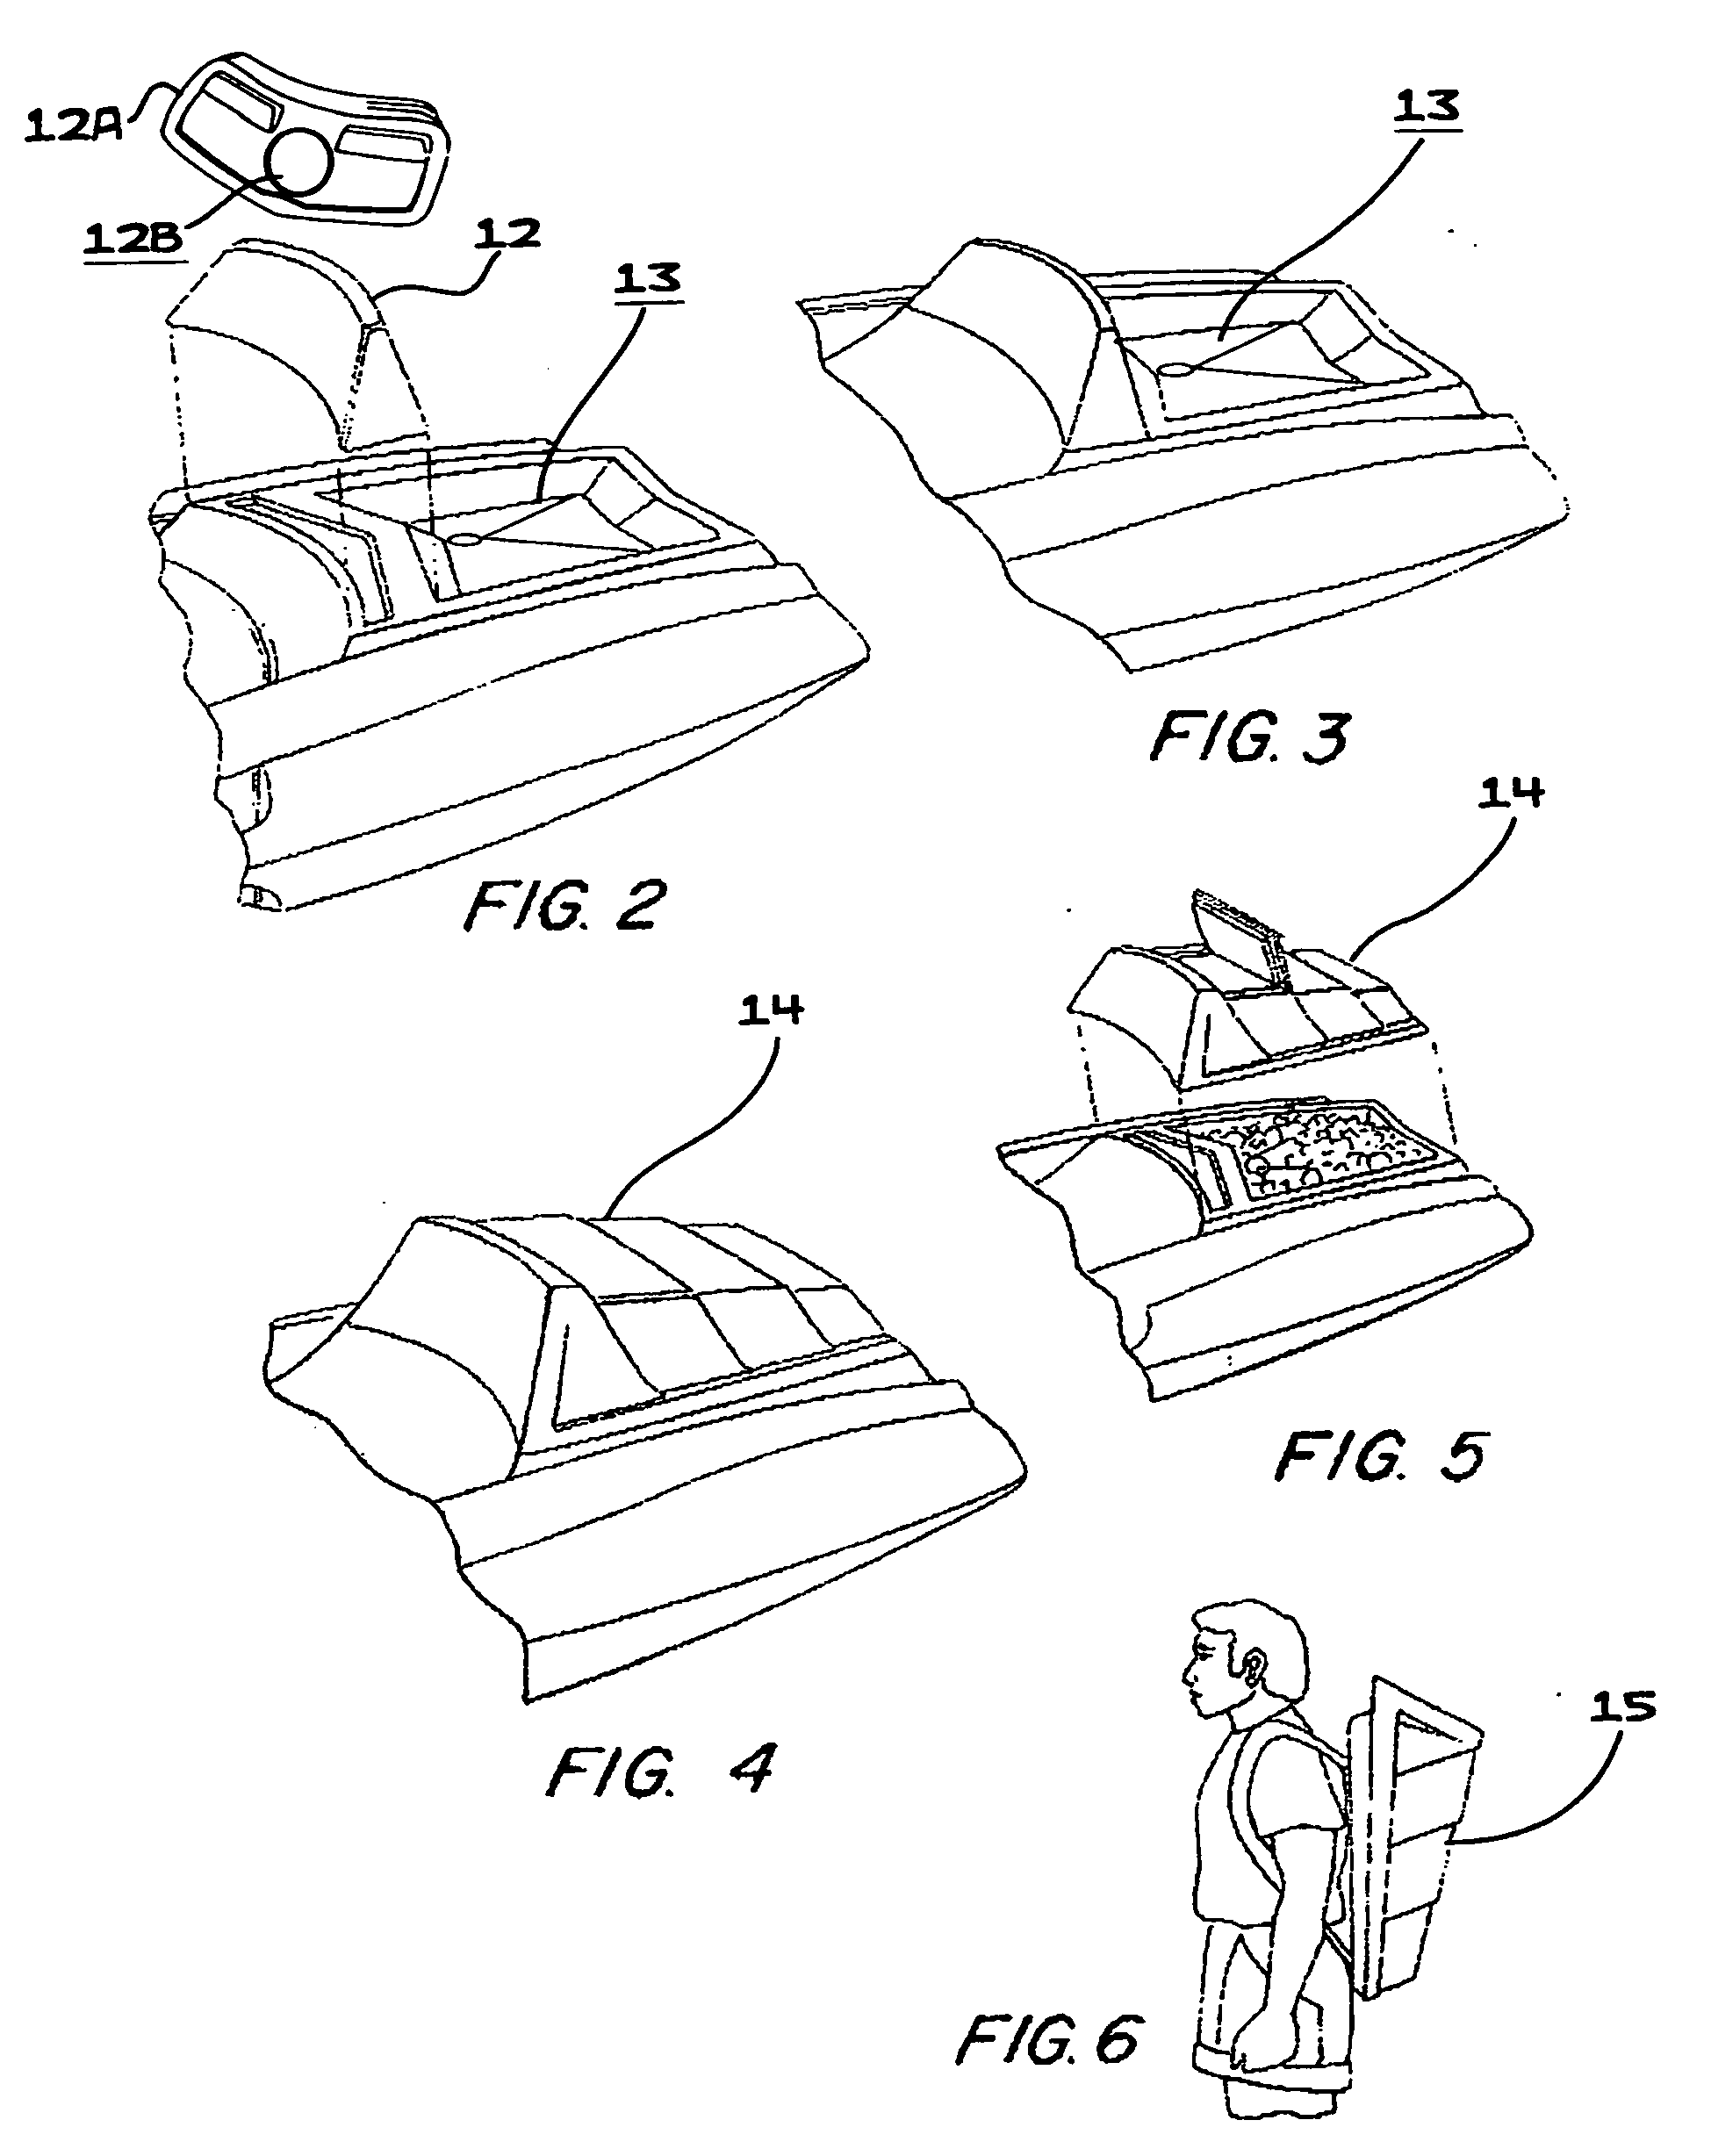 Multi-purpose, plastic molded, sit-on-top kayak